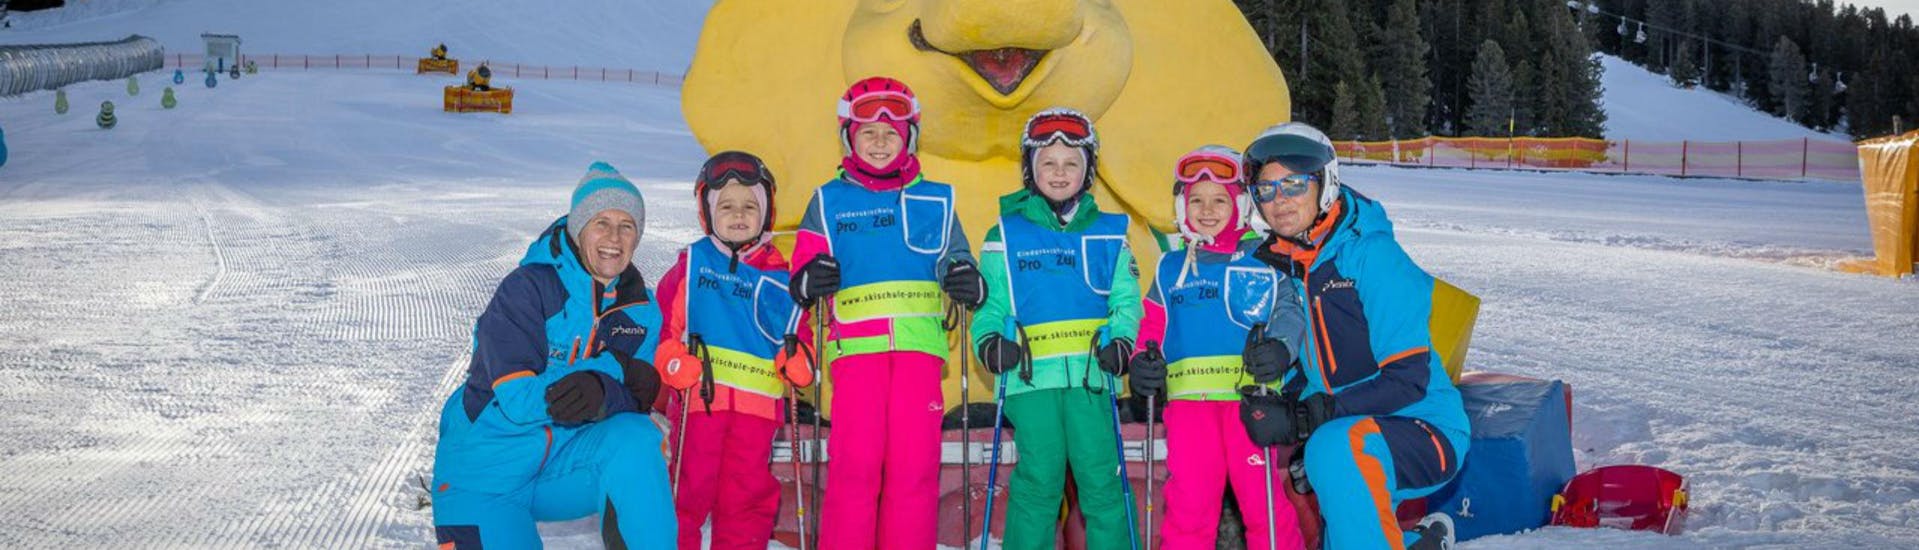 Eine Gruppe Kinder und ihrer beiden Skilehrerinnen der Skischule Pro Zell in Zell am Ziller posieren bei der Aktivität Privater Kinder Skikurs für ein gemeinsames Foto im Kinderland.